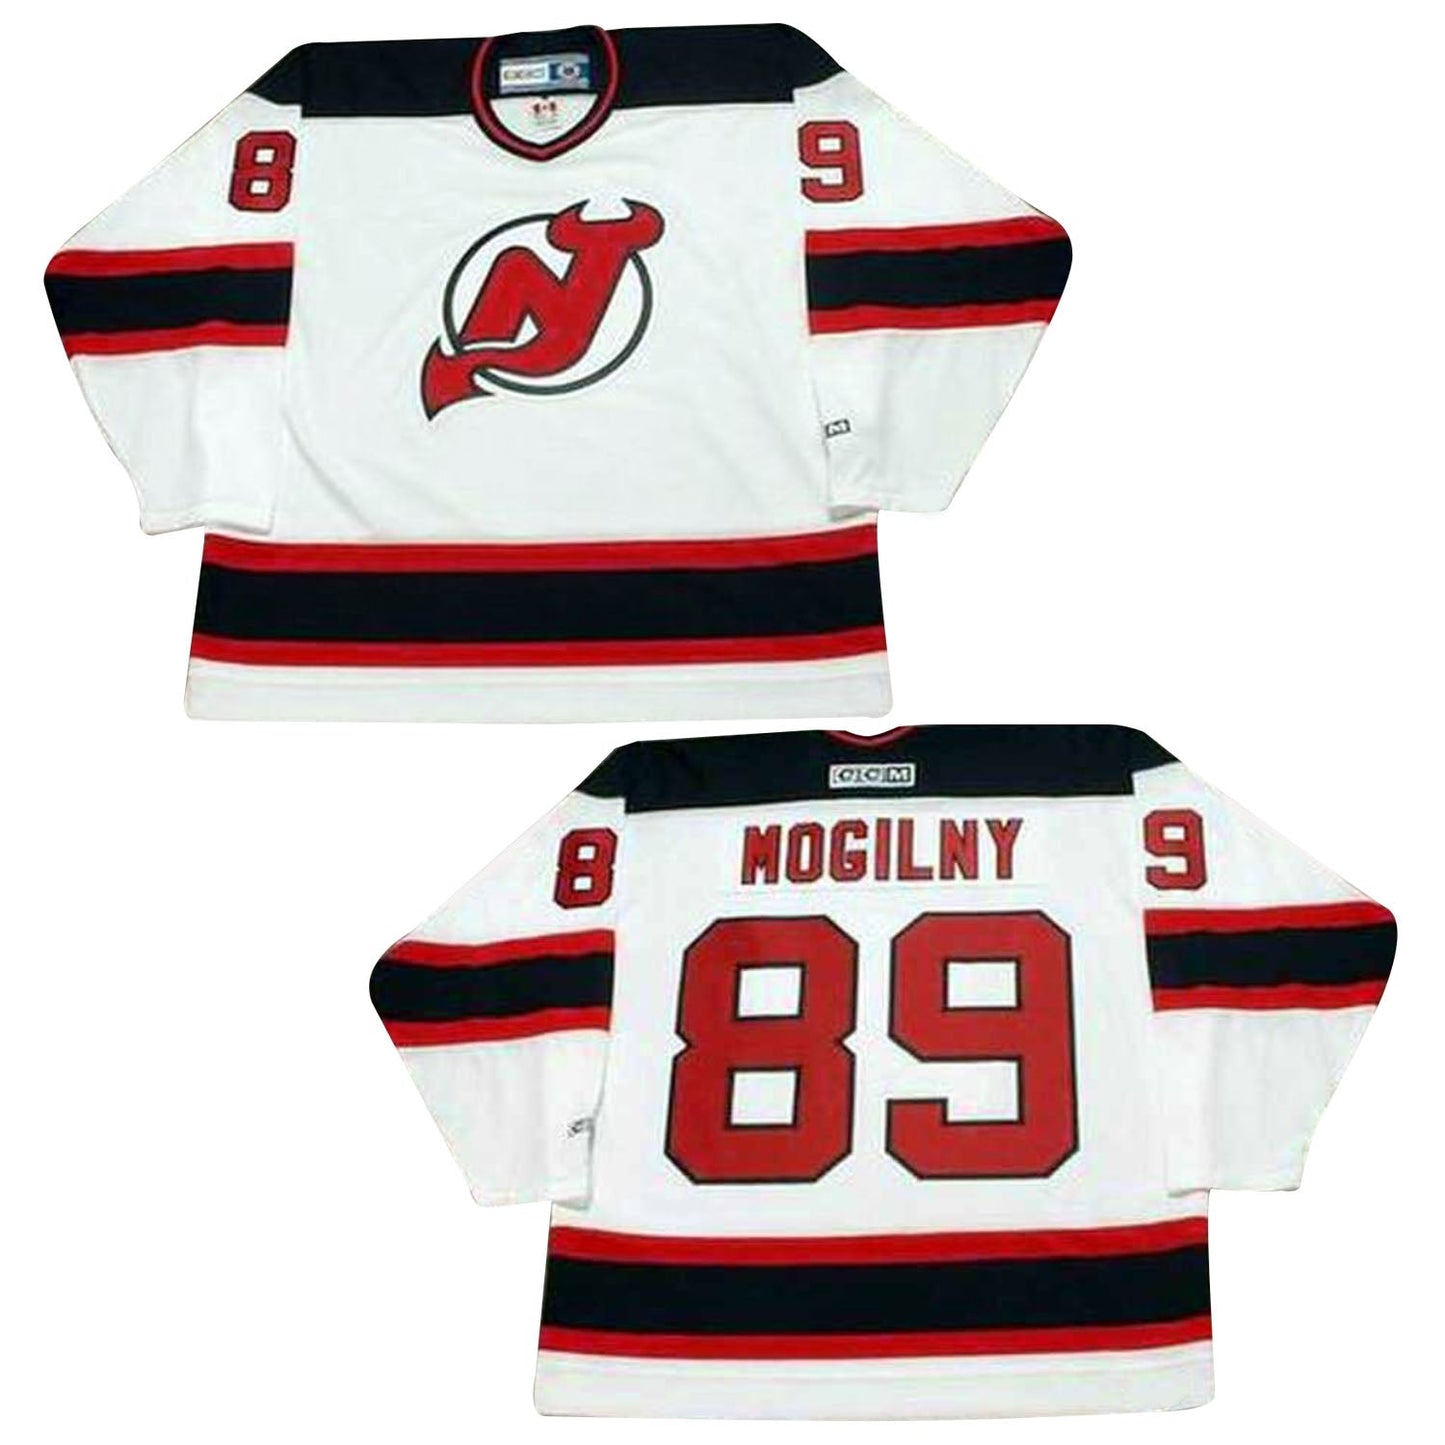 NHL Alexander Mogilny New Jersey Devils 89 Jersey